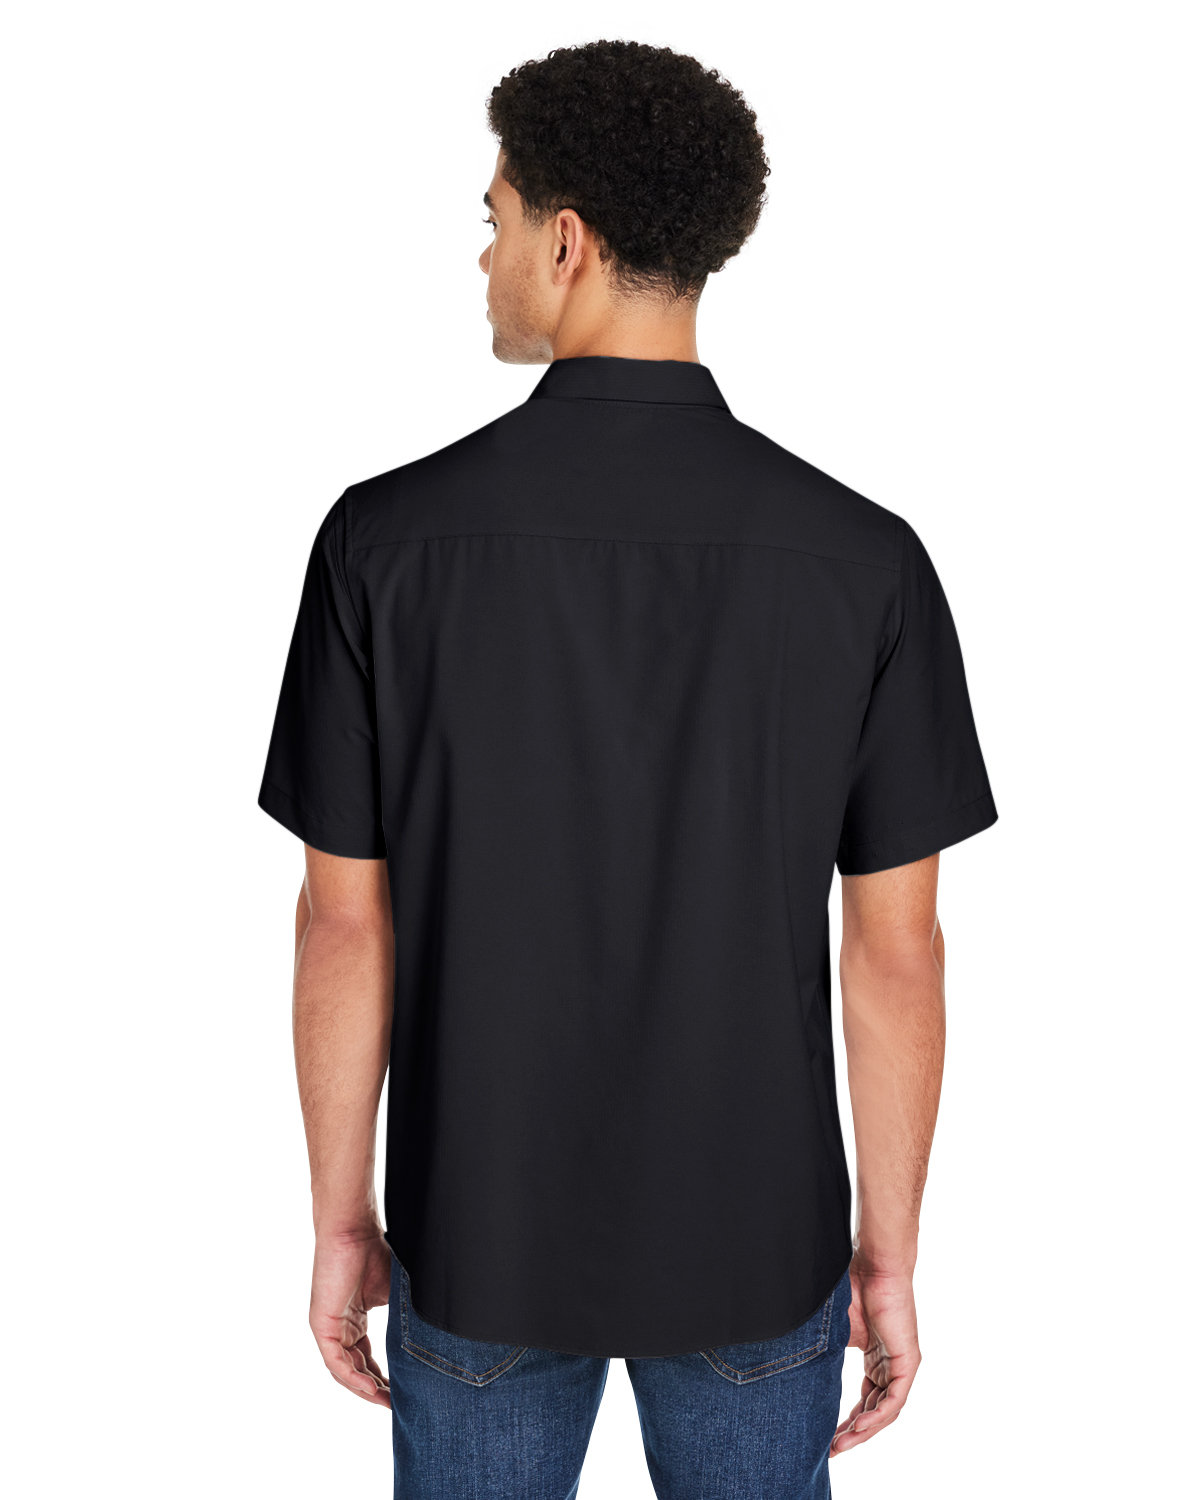 CORE365 Men's Ultra UVP® Marina Shirt | alphabroder